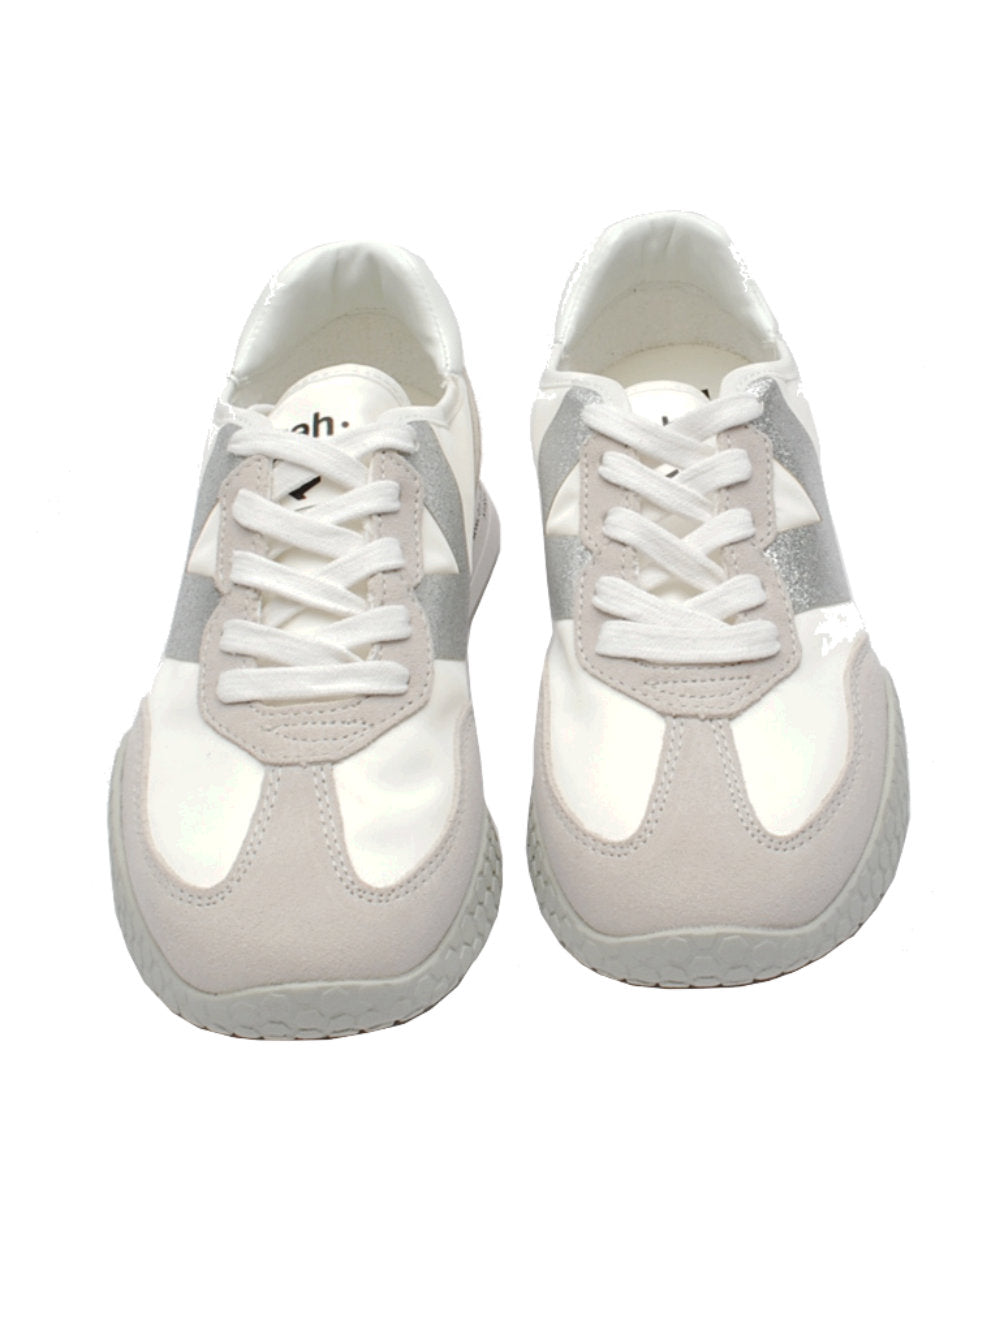 Kehnoo sneaker white silver 9312 pe24